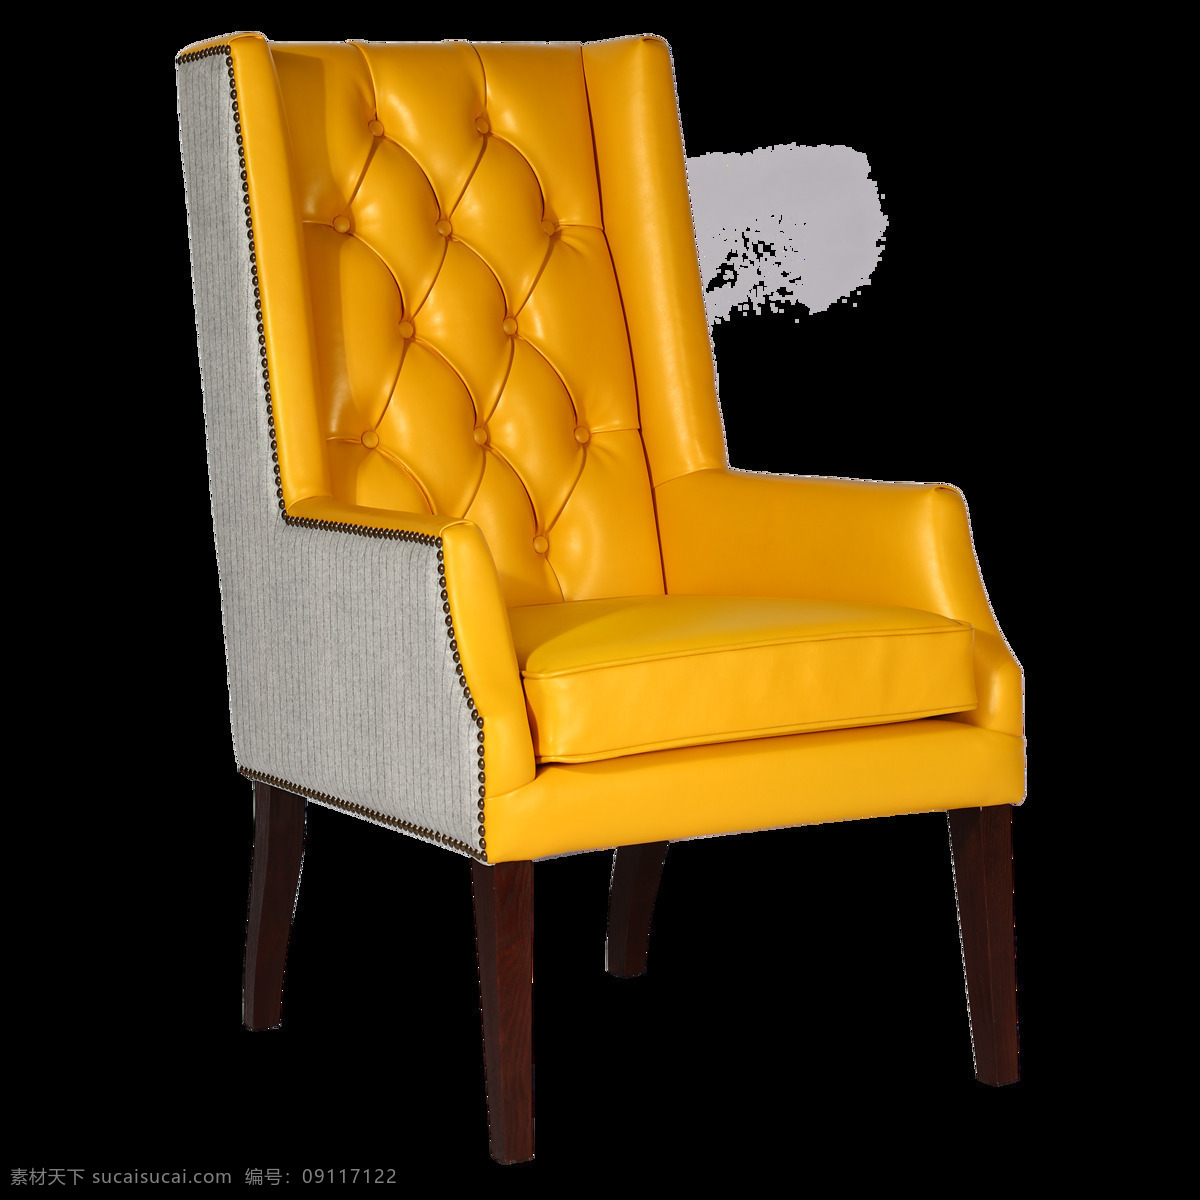 可椅高级定制 黄色 拉 扣 高背 洽谈 椅 餐椅 椅子 沙发 高级定制 简约 北欧 哥特 自然 地中海 现代 新中式 家具 家居